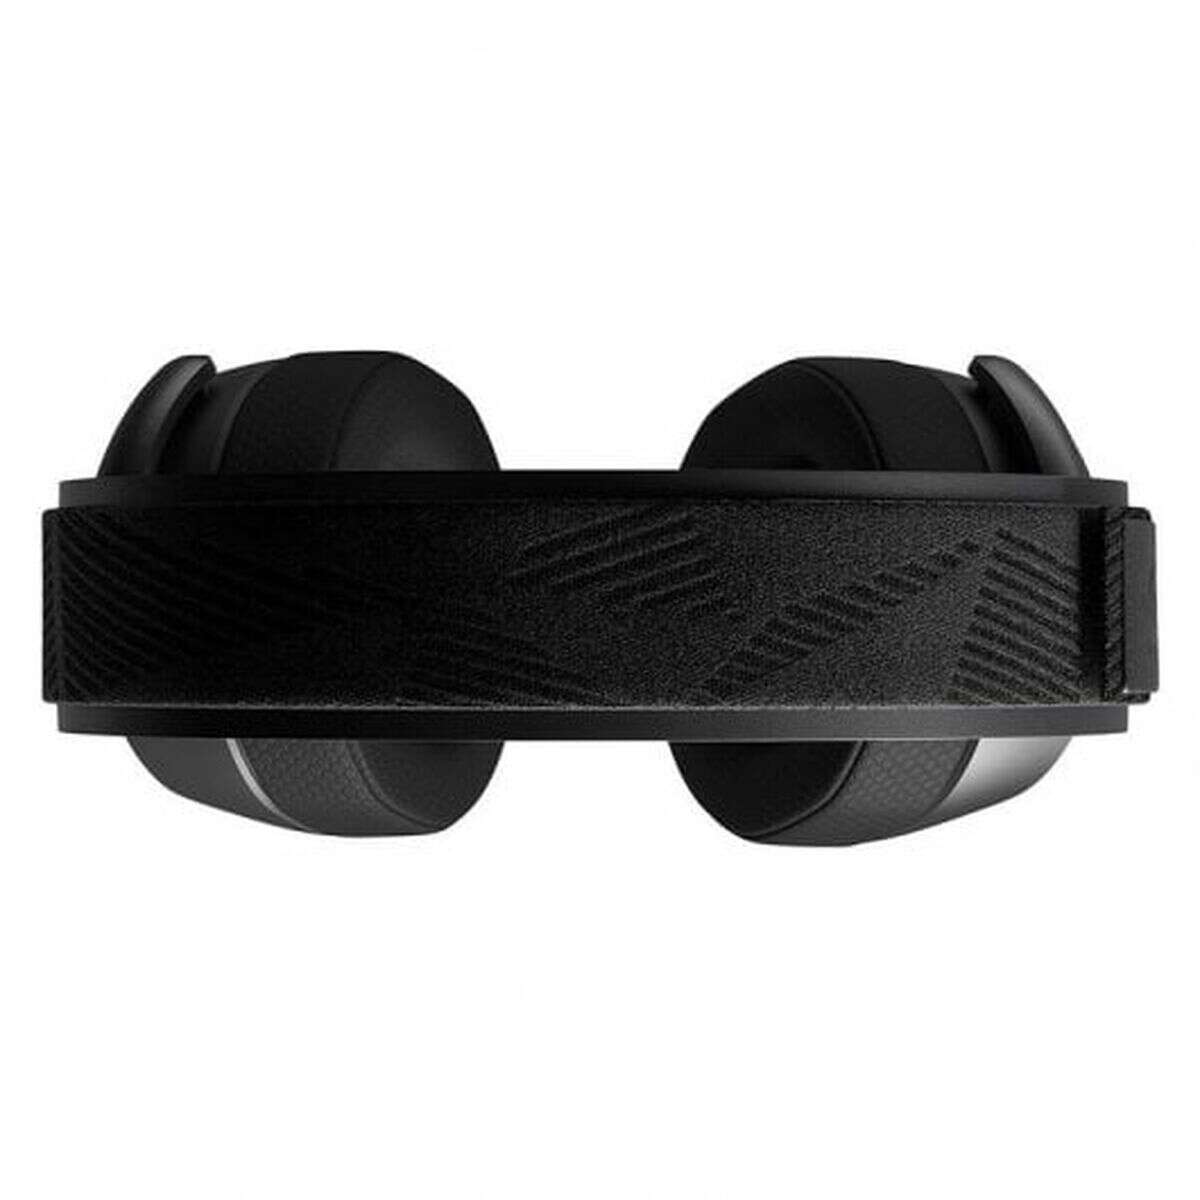 Fejhallgató mikrofonnal steelseries arctis pro fekete